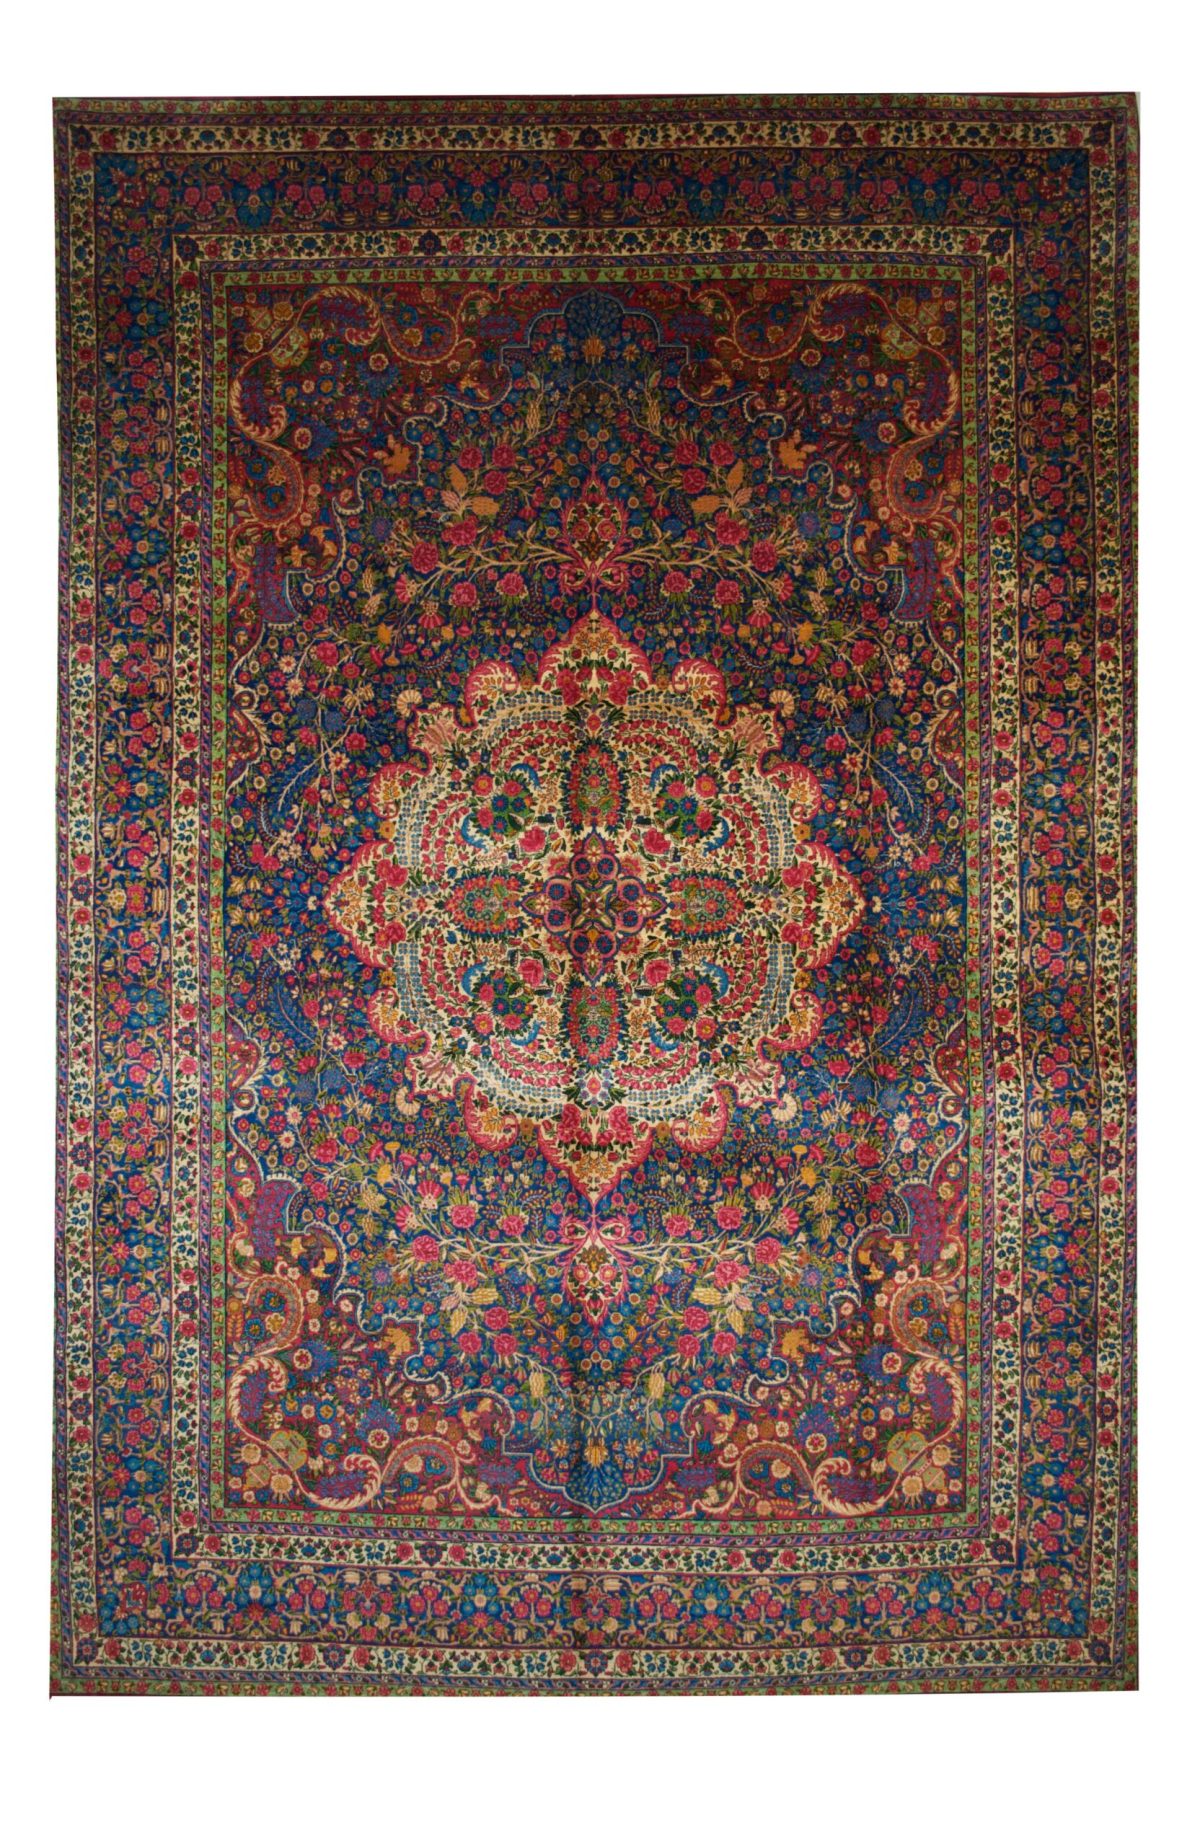 Antique Persian Yazd 9' 2" x 13' 3" Handmade Area Rug - Shabahang Royal Carpet